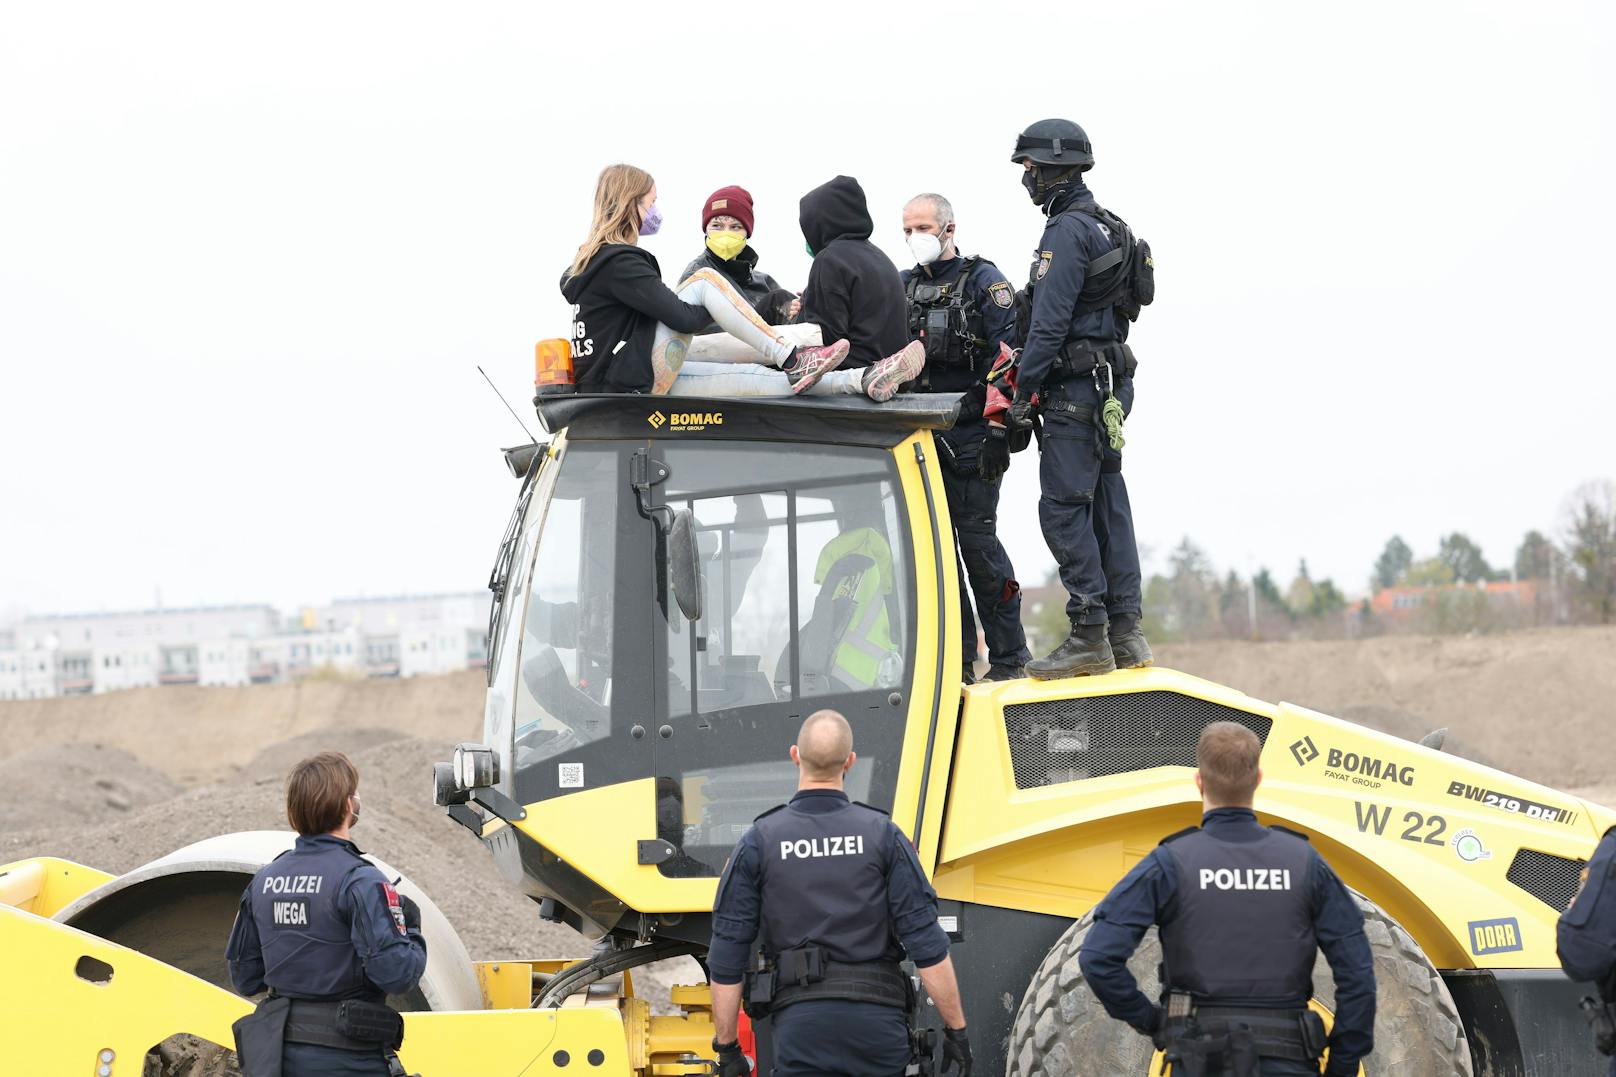 LobauBleibt-Demonstranten besetzten am Mittwoch einen Bagger in Wien-Donaustadt. Die Polizei transportierte die Aktivisten ab.